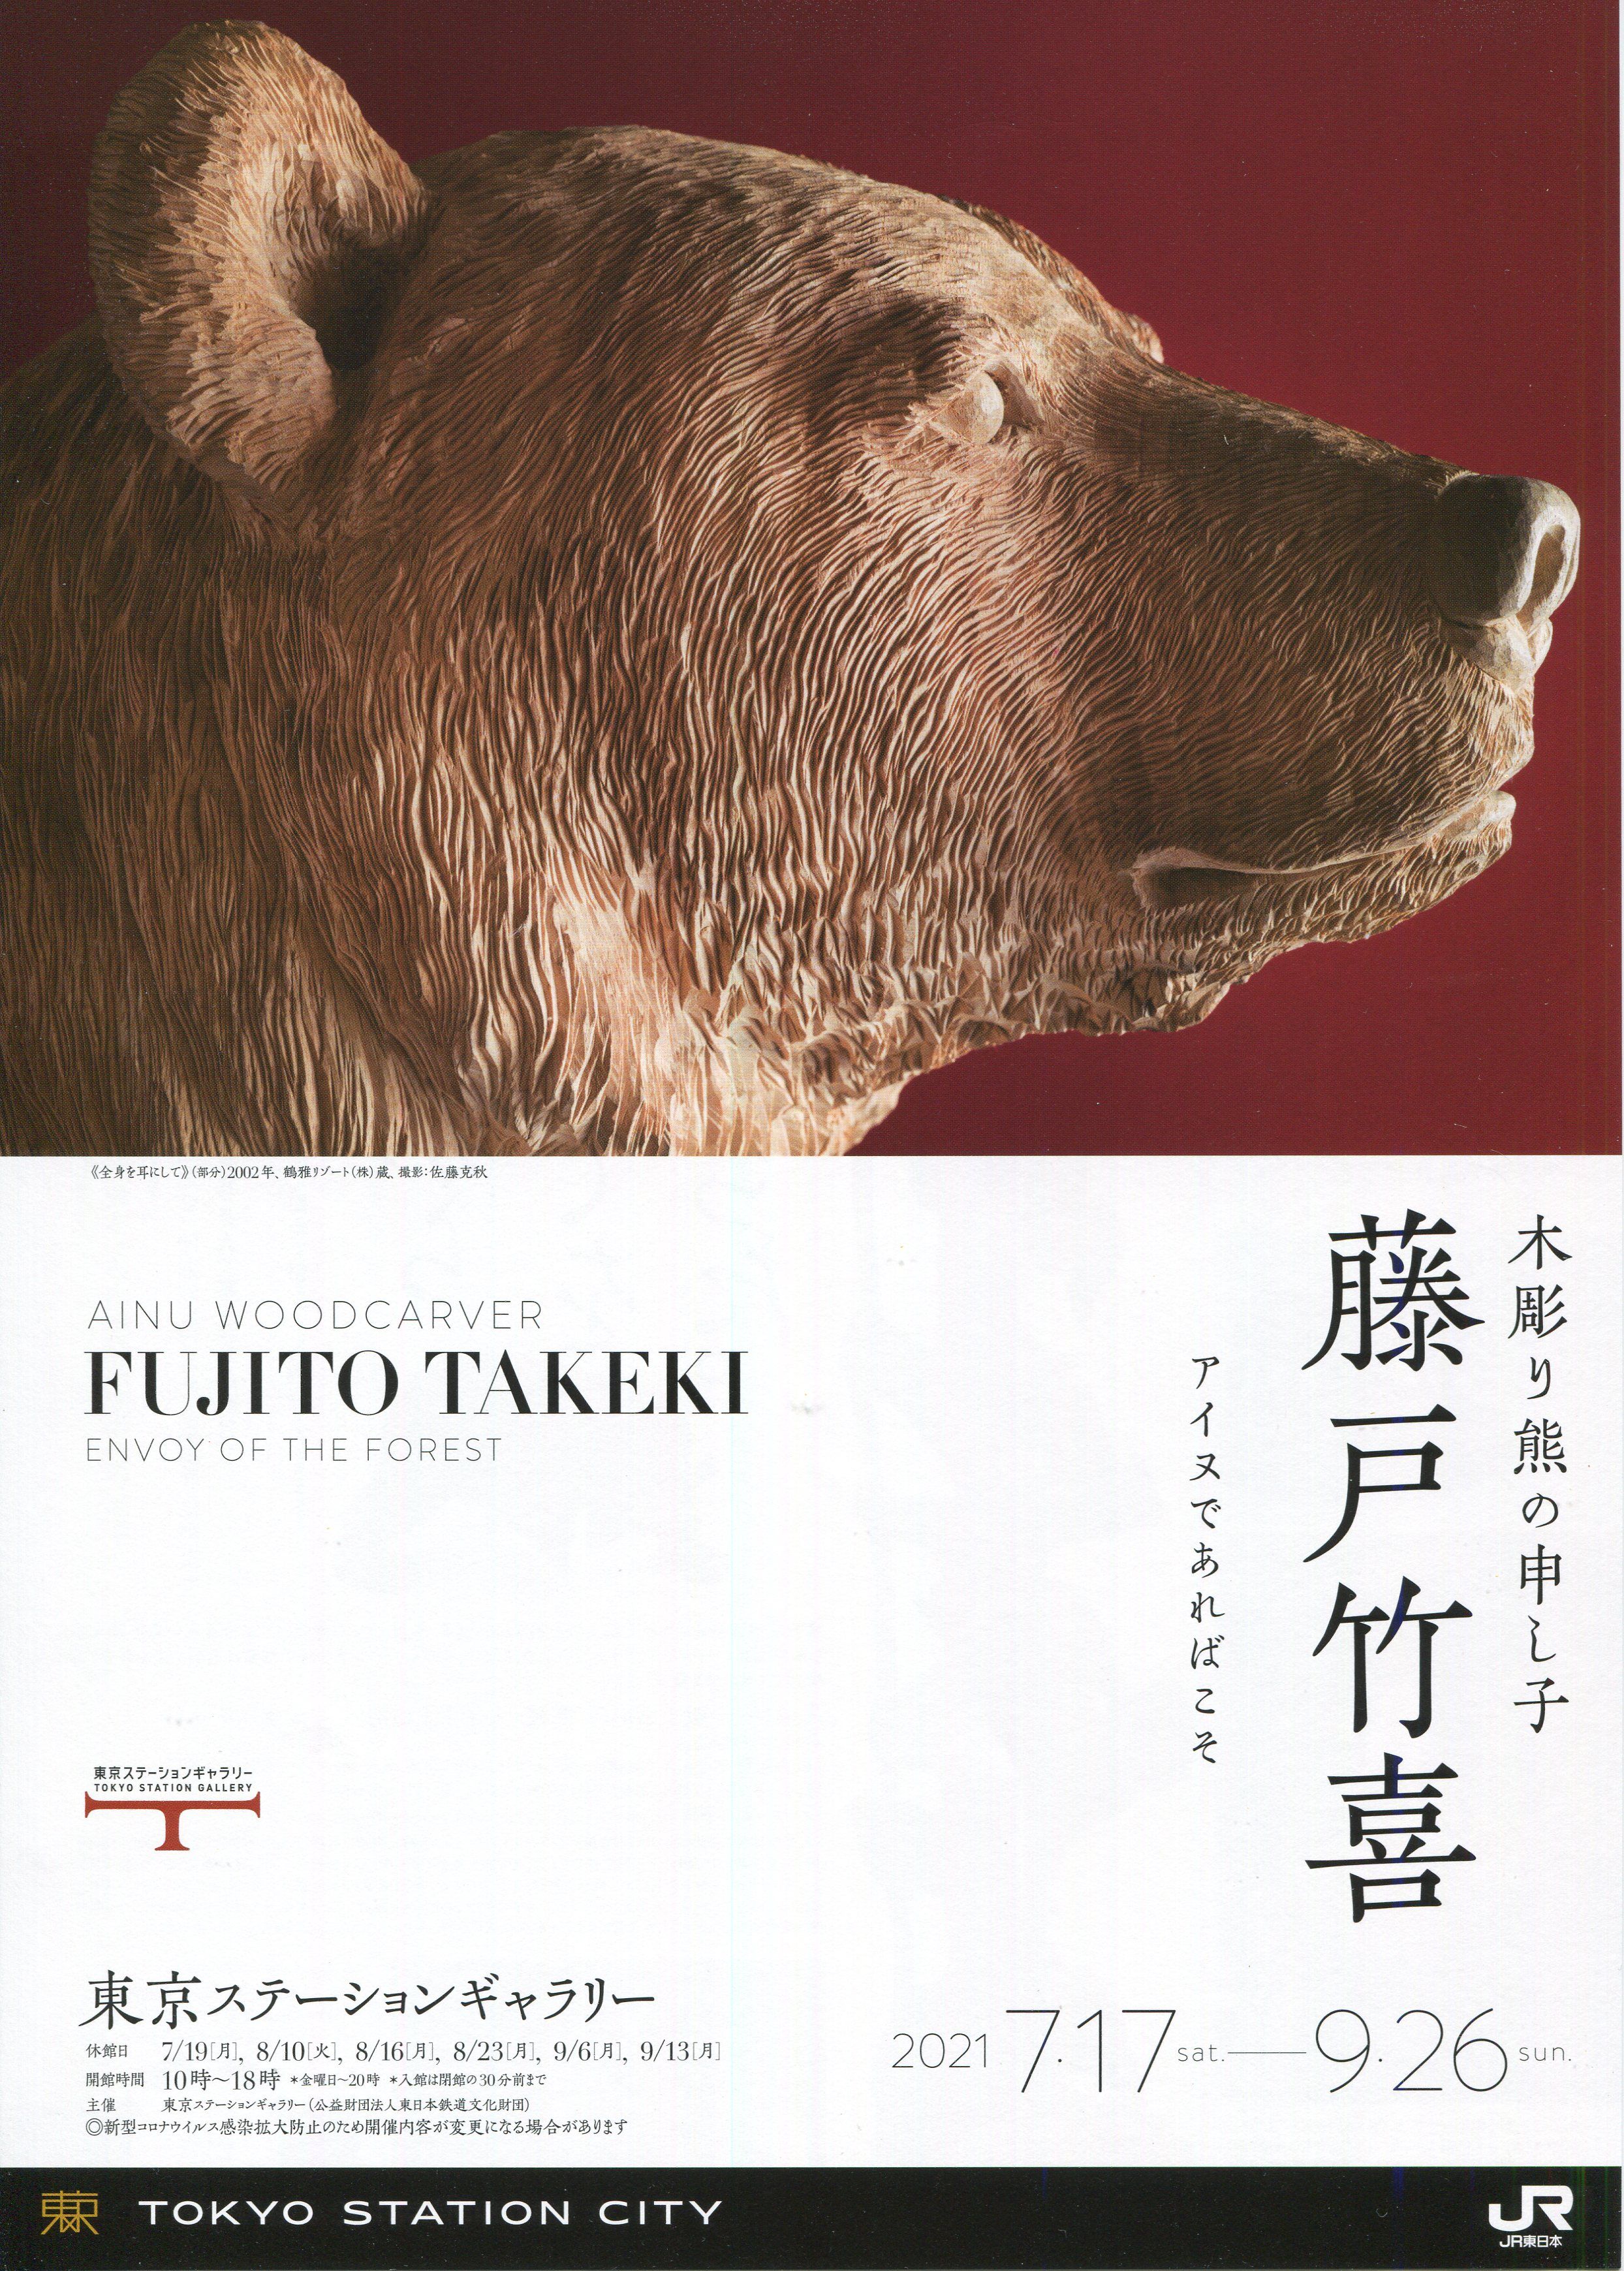 猫アリーナ 「木彫り熊の申し子 藤戸竹喜 アイヌであればこそ」展 東京 